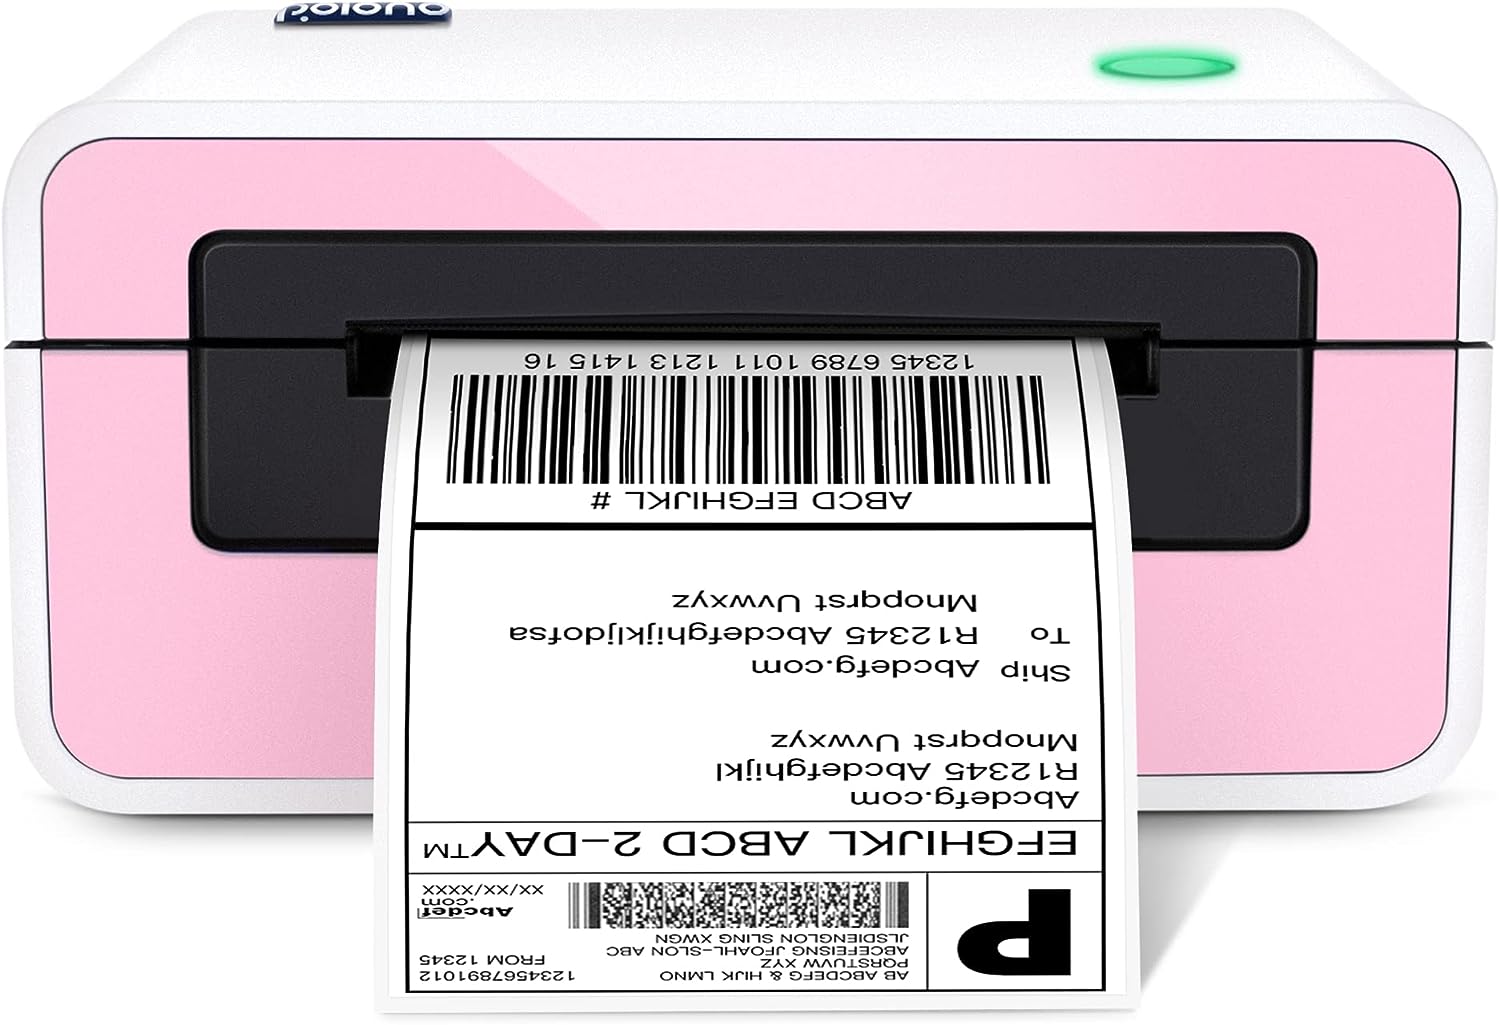 POLONO Shipping Label Printer, 4x6 Label Printer for [...]